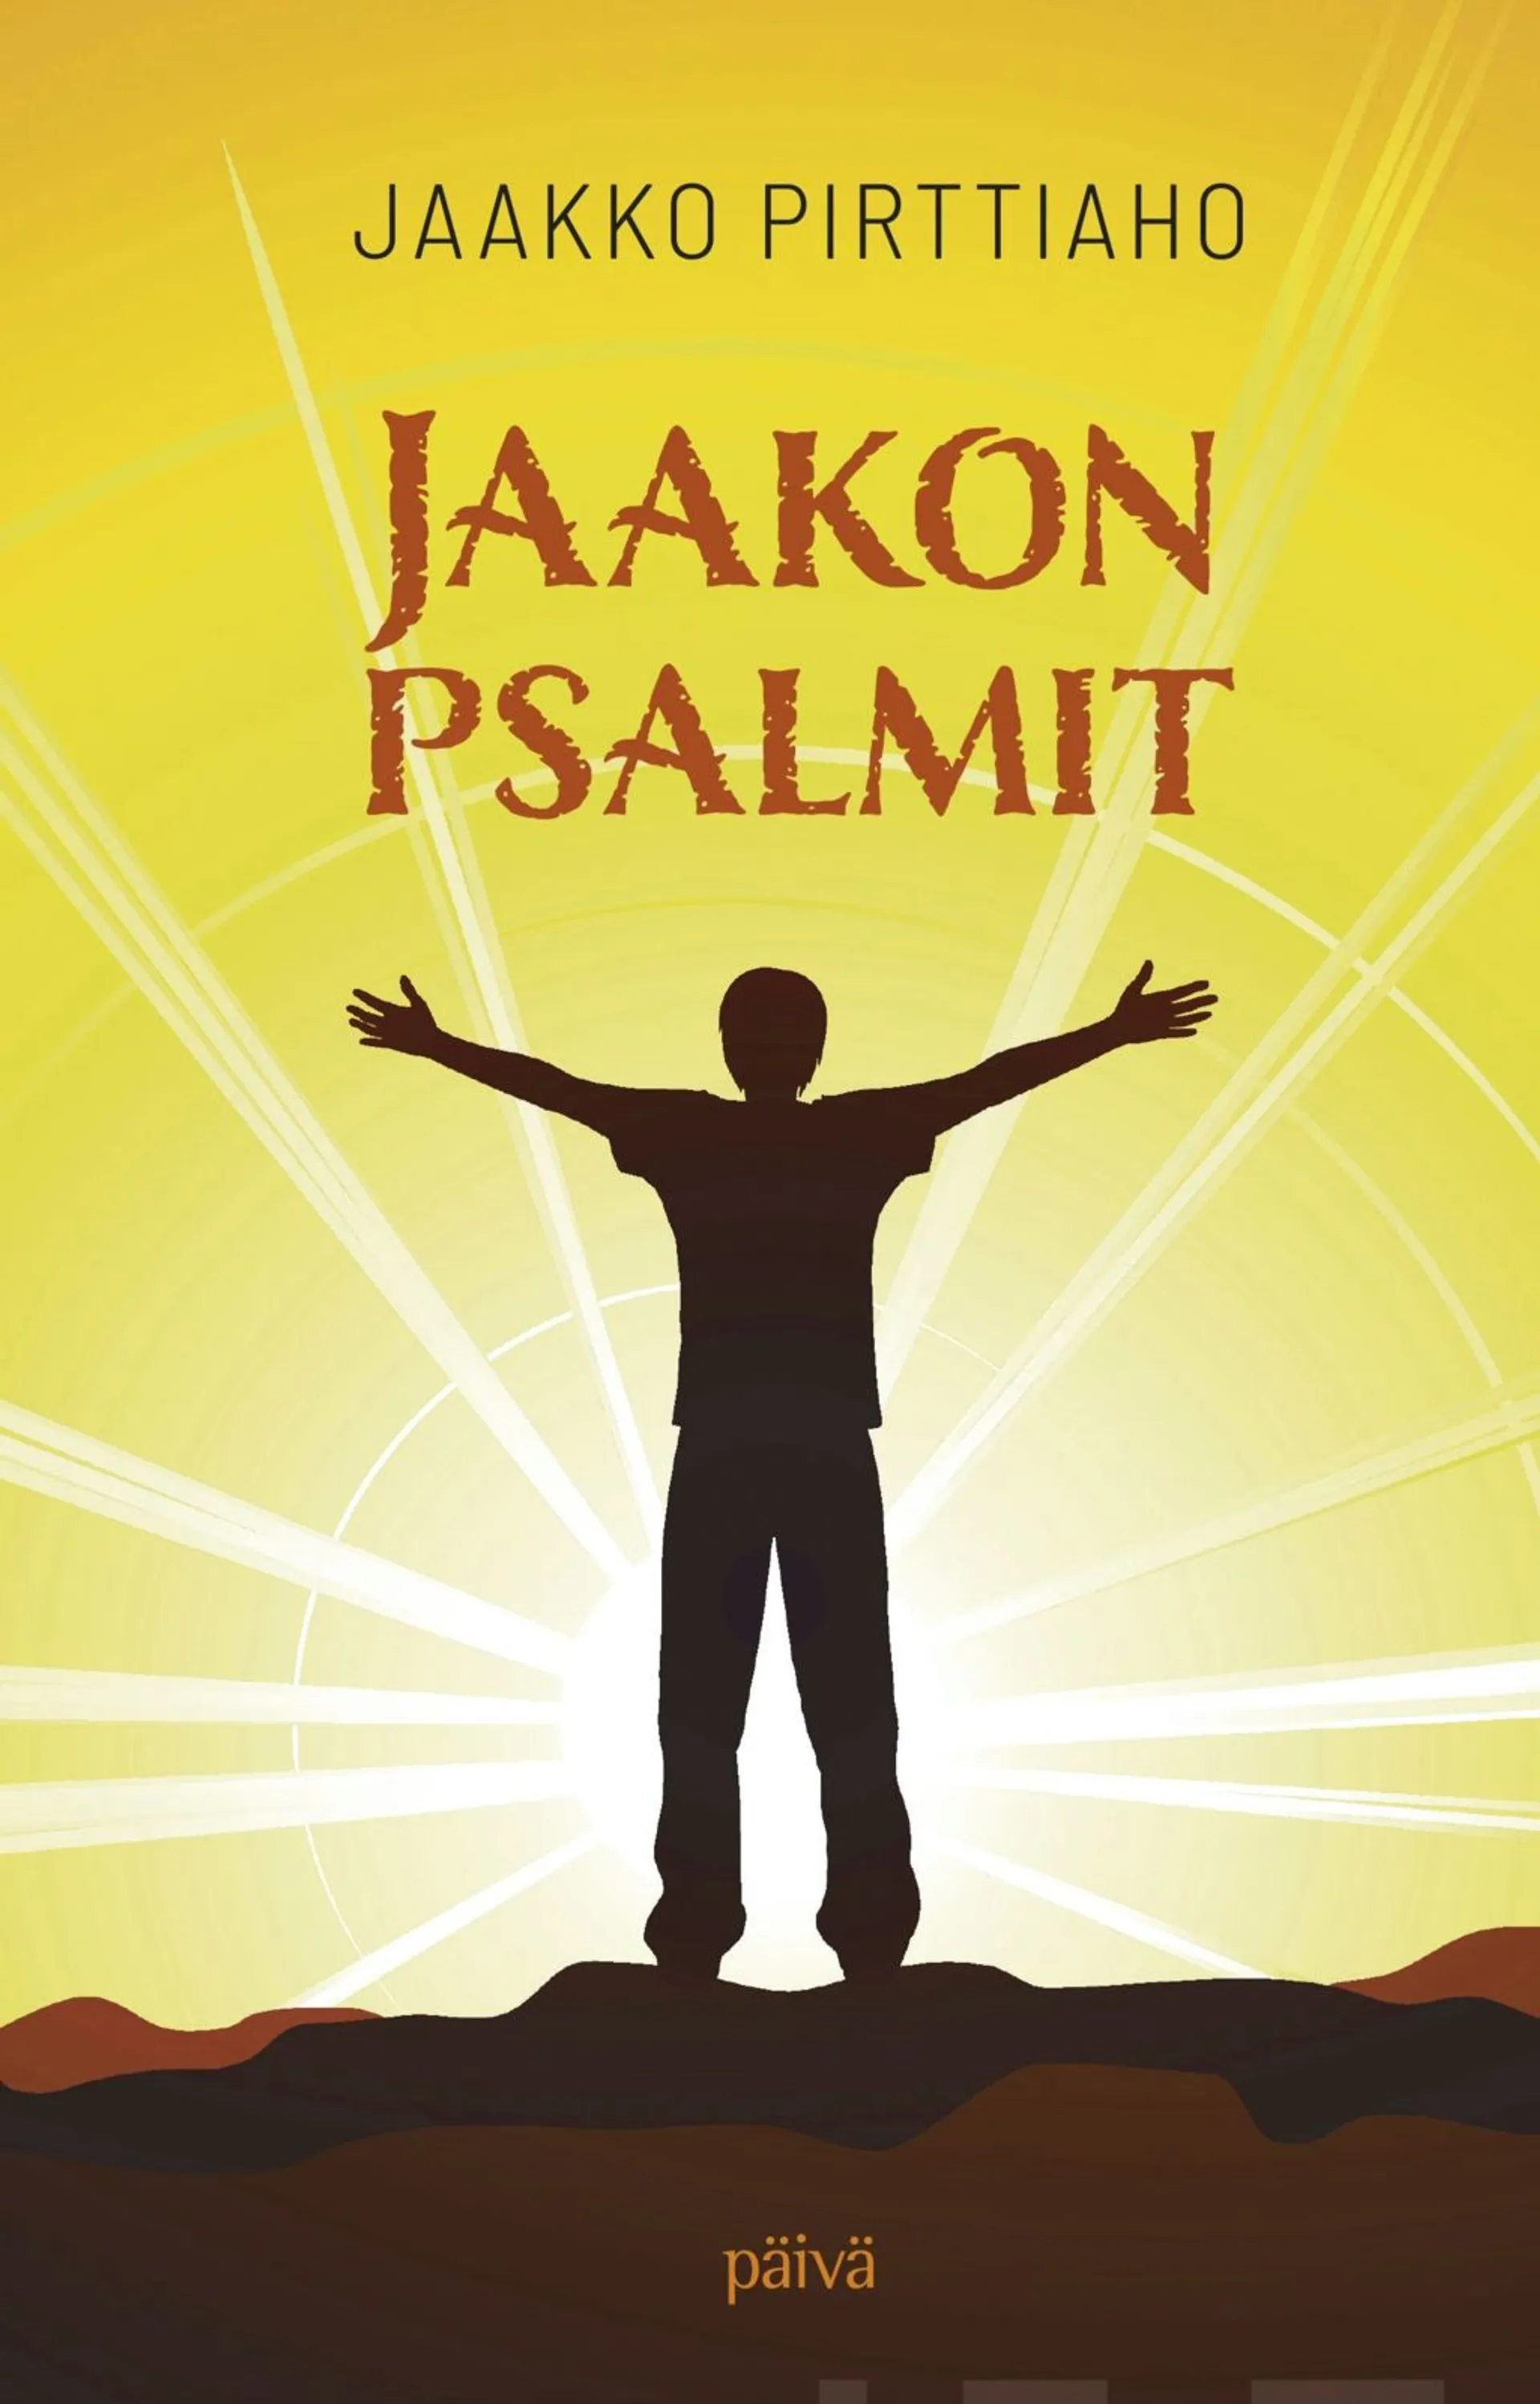 Pirttiaho, Jaakon psalmit